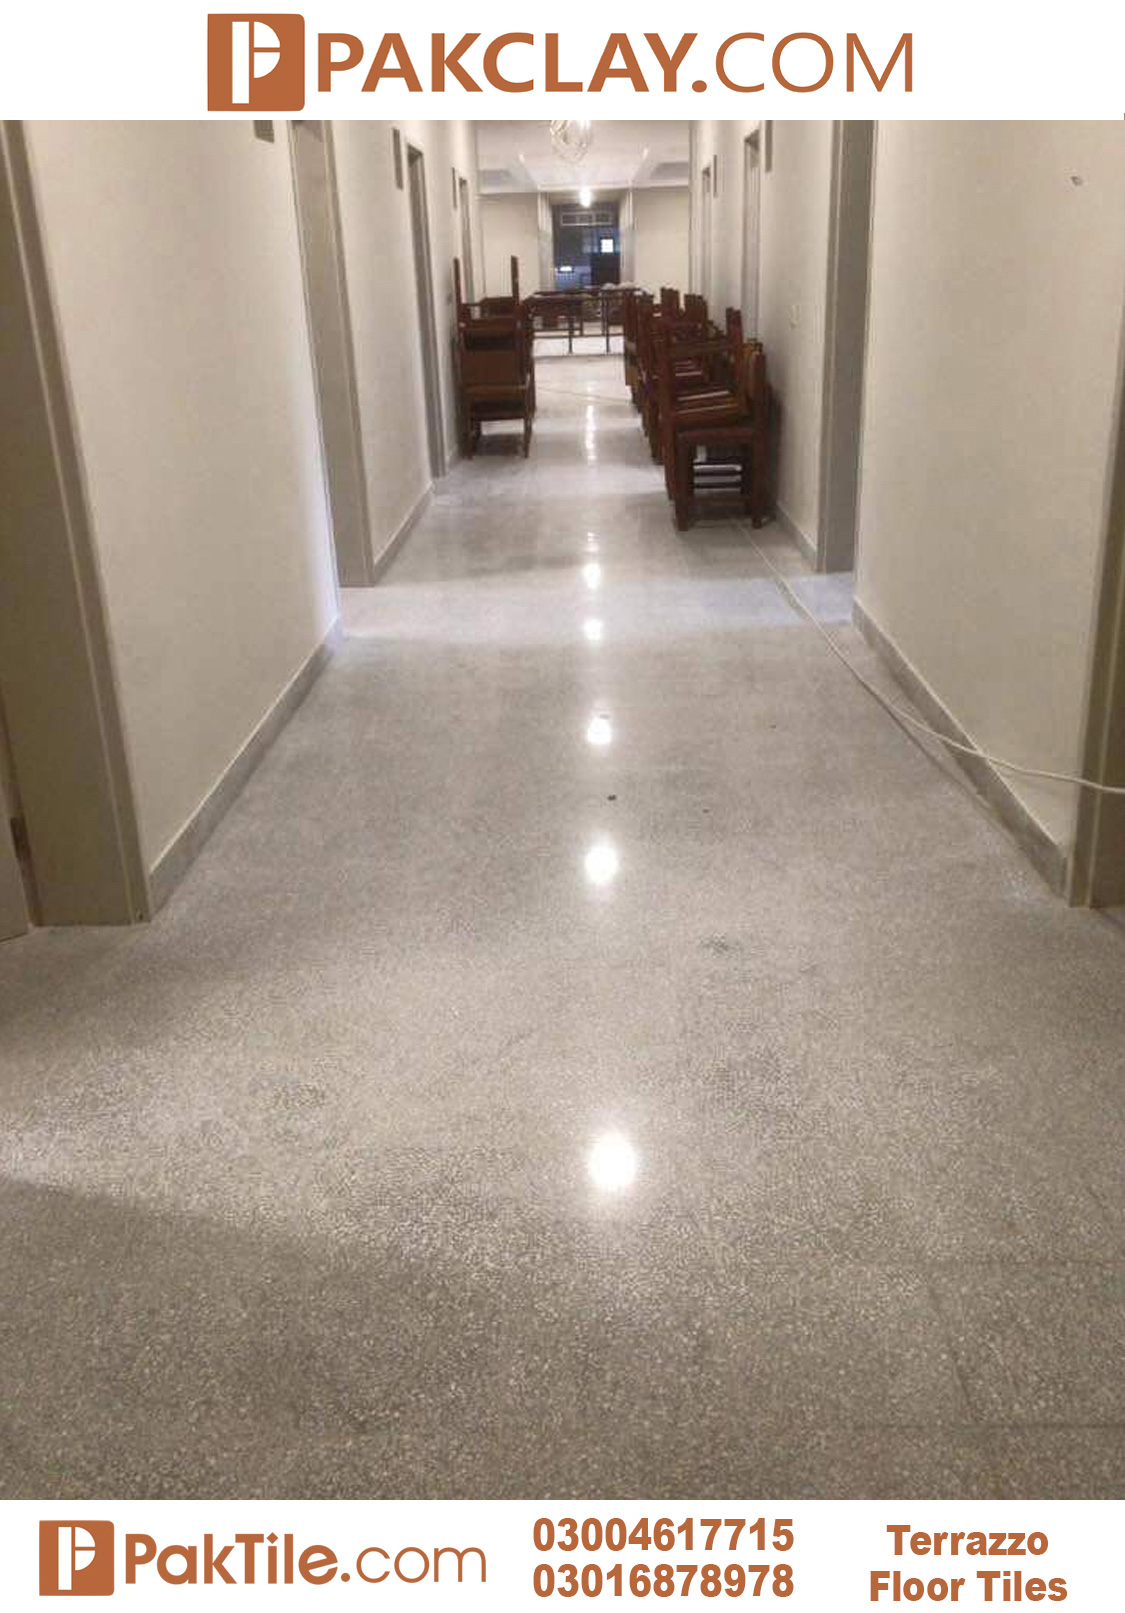 Corridor terrazzo floor tiles design in pakistan